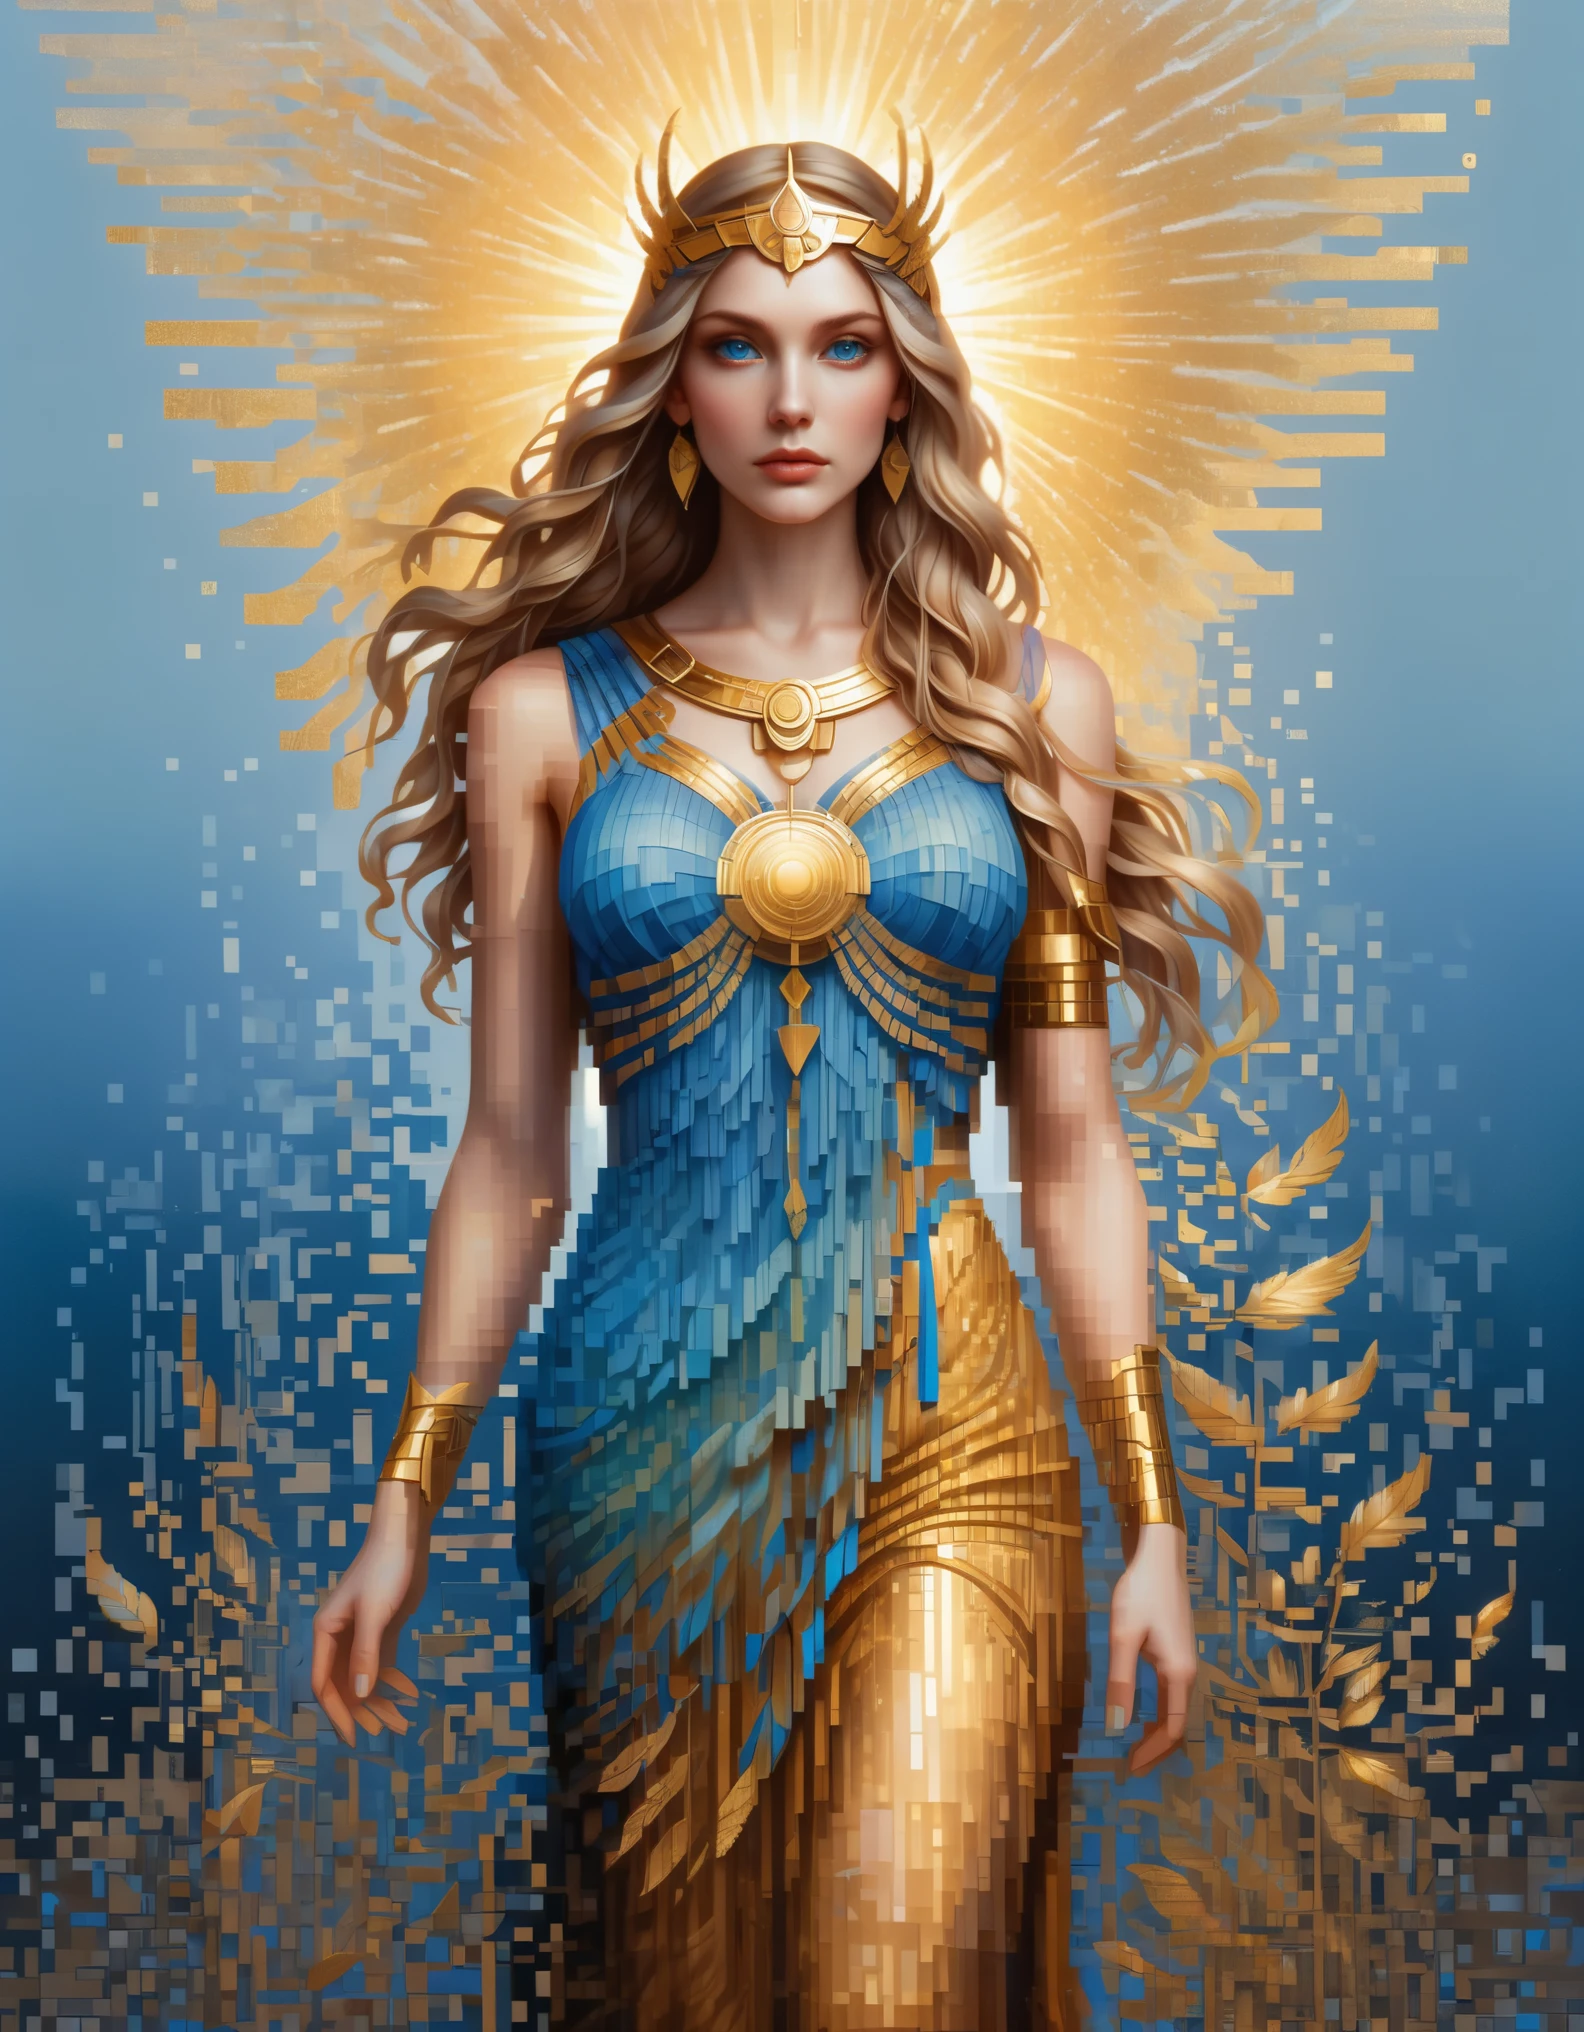 arte de pixel，al estilo de Amanda Sage, Hermosos detalles，Hermosa diosa Atenea en un color azul degradado de píxeles disueltos，（todo el cuerpo），Ojos azules extraordinariamente hermosos.，descomponerse gradualmente，El sol dorado brilla，Reflexión parcial en el agua.，